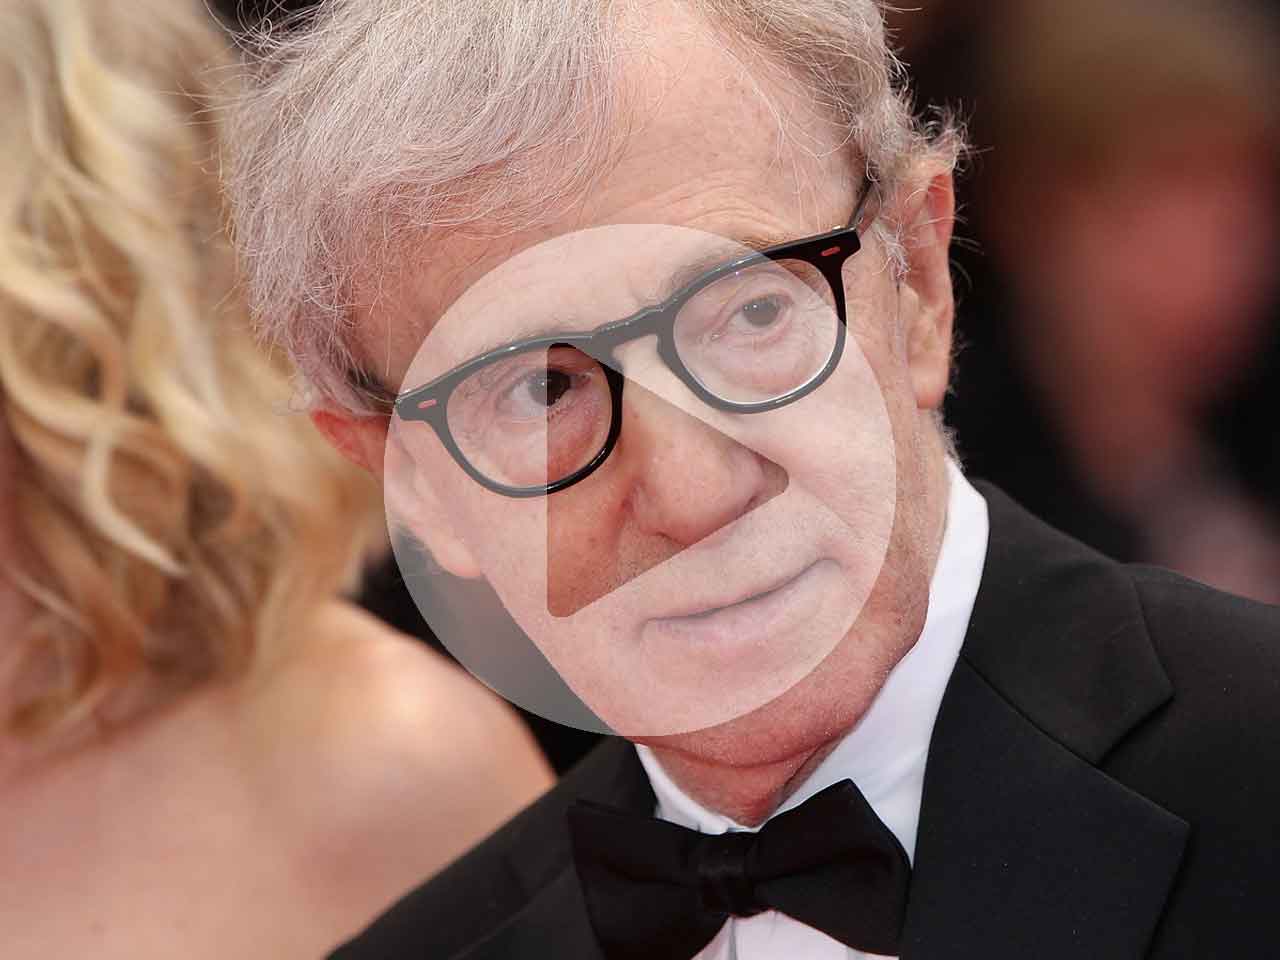 Actor and director, Woody Allen